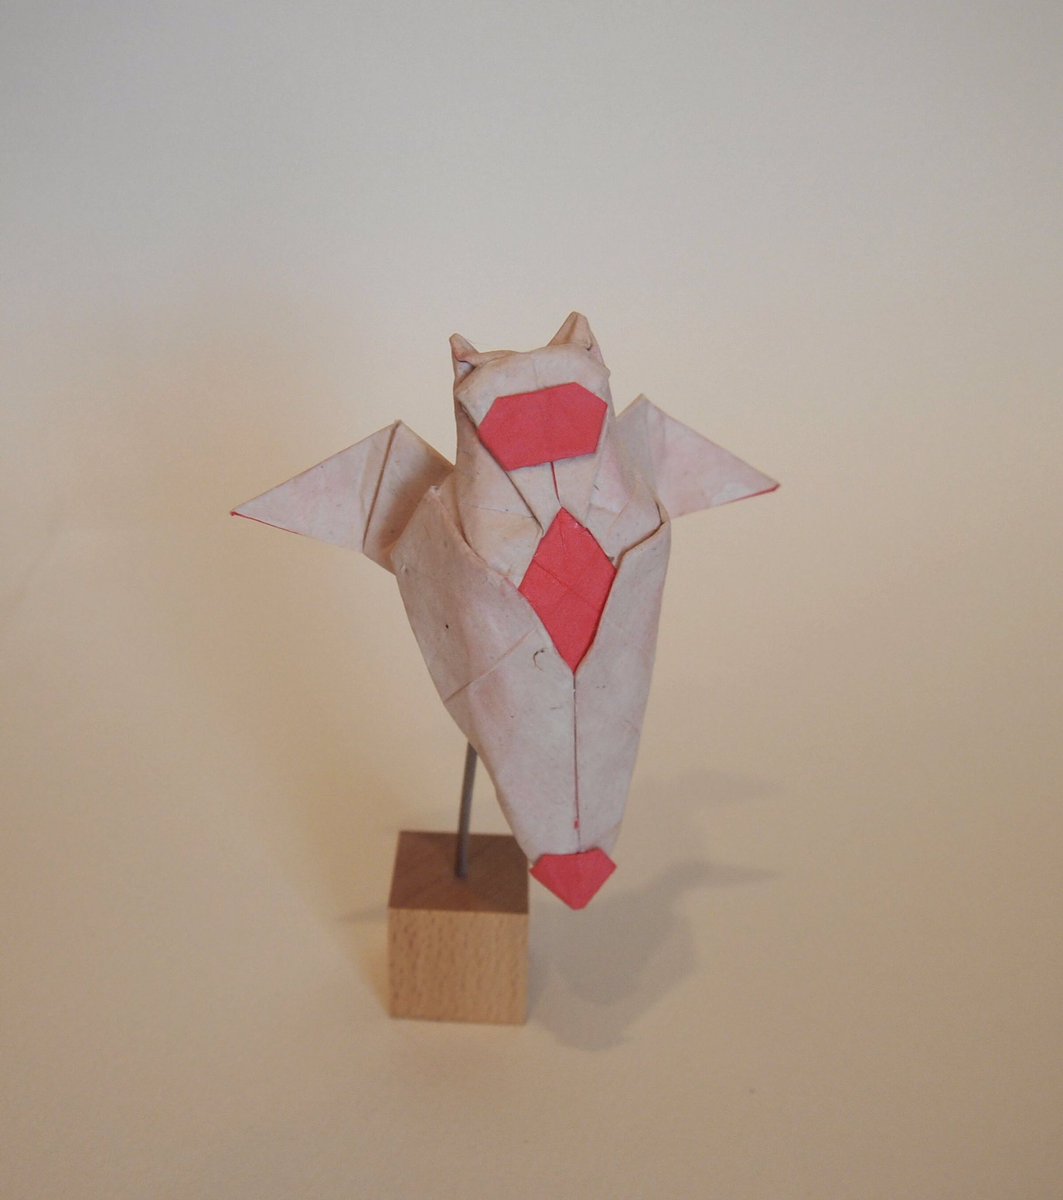 O Xrhsths 一匹柴犬 Sto Twitter 折り紙作品 クリオネ 創作 折り 一匹柴犬 正方形1枚折り Origami 折り紙作品 折り紙